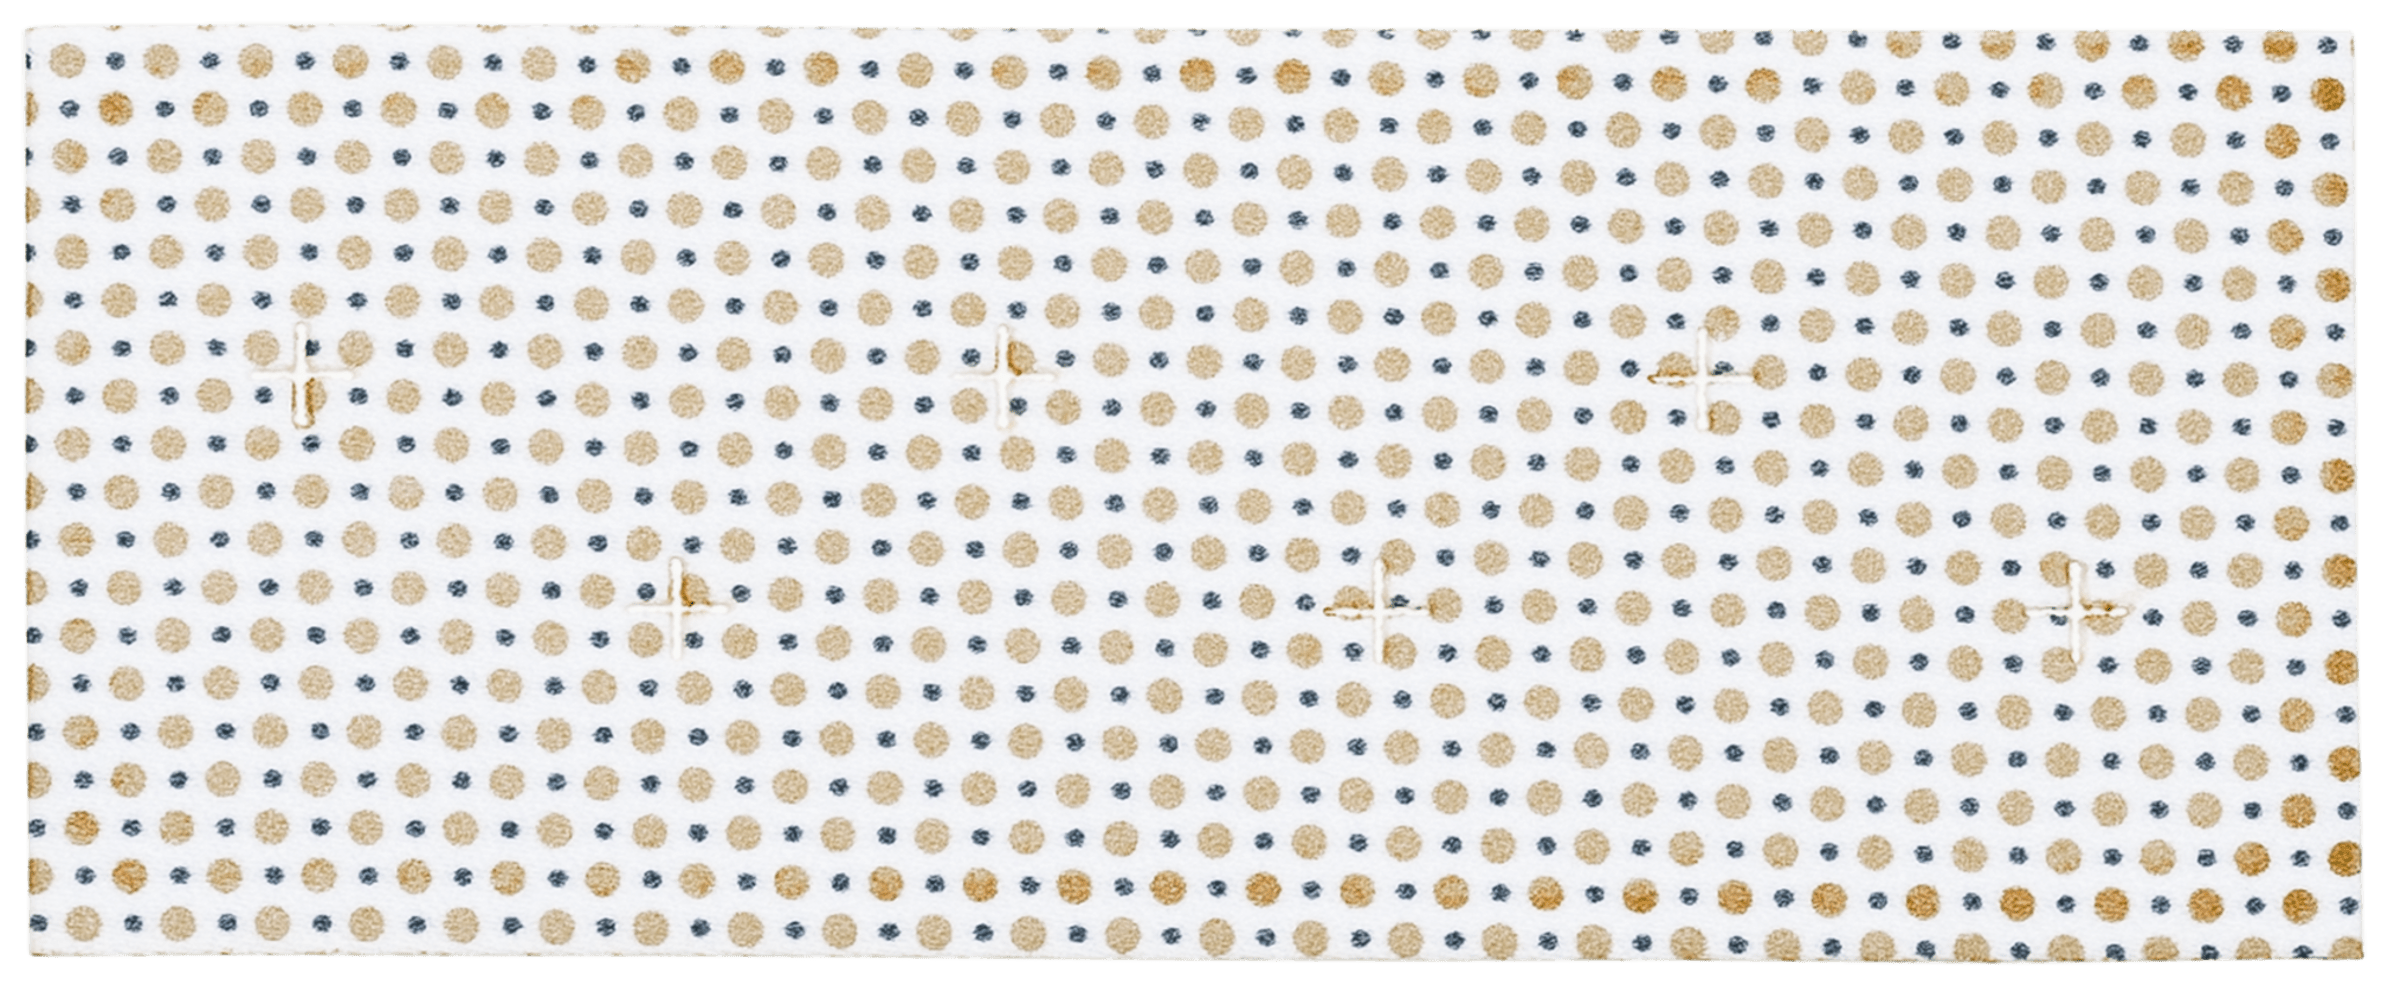 JumpStart, antimikrobielle Wundauflage, 5 cm x 12.5 cm